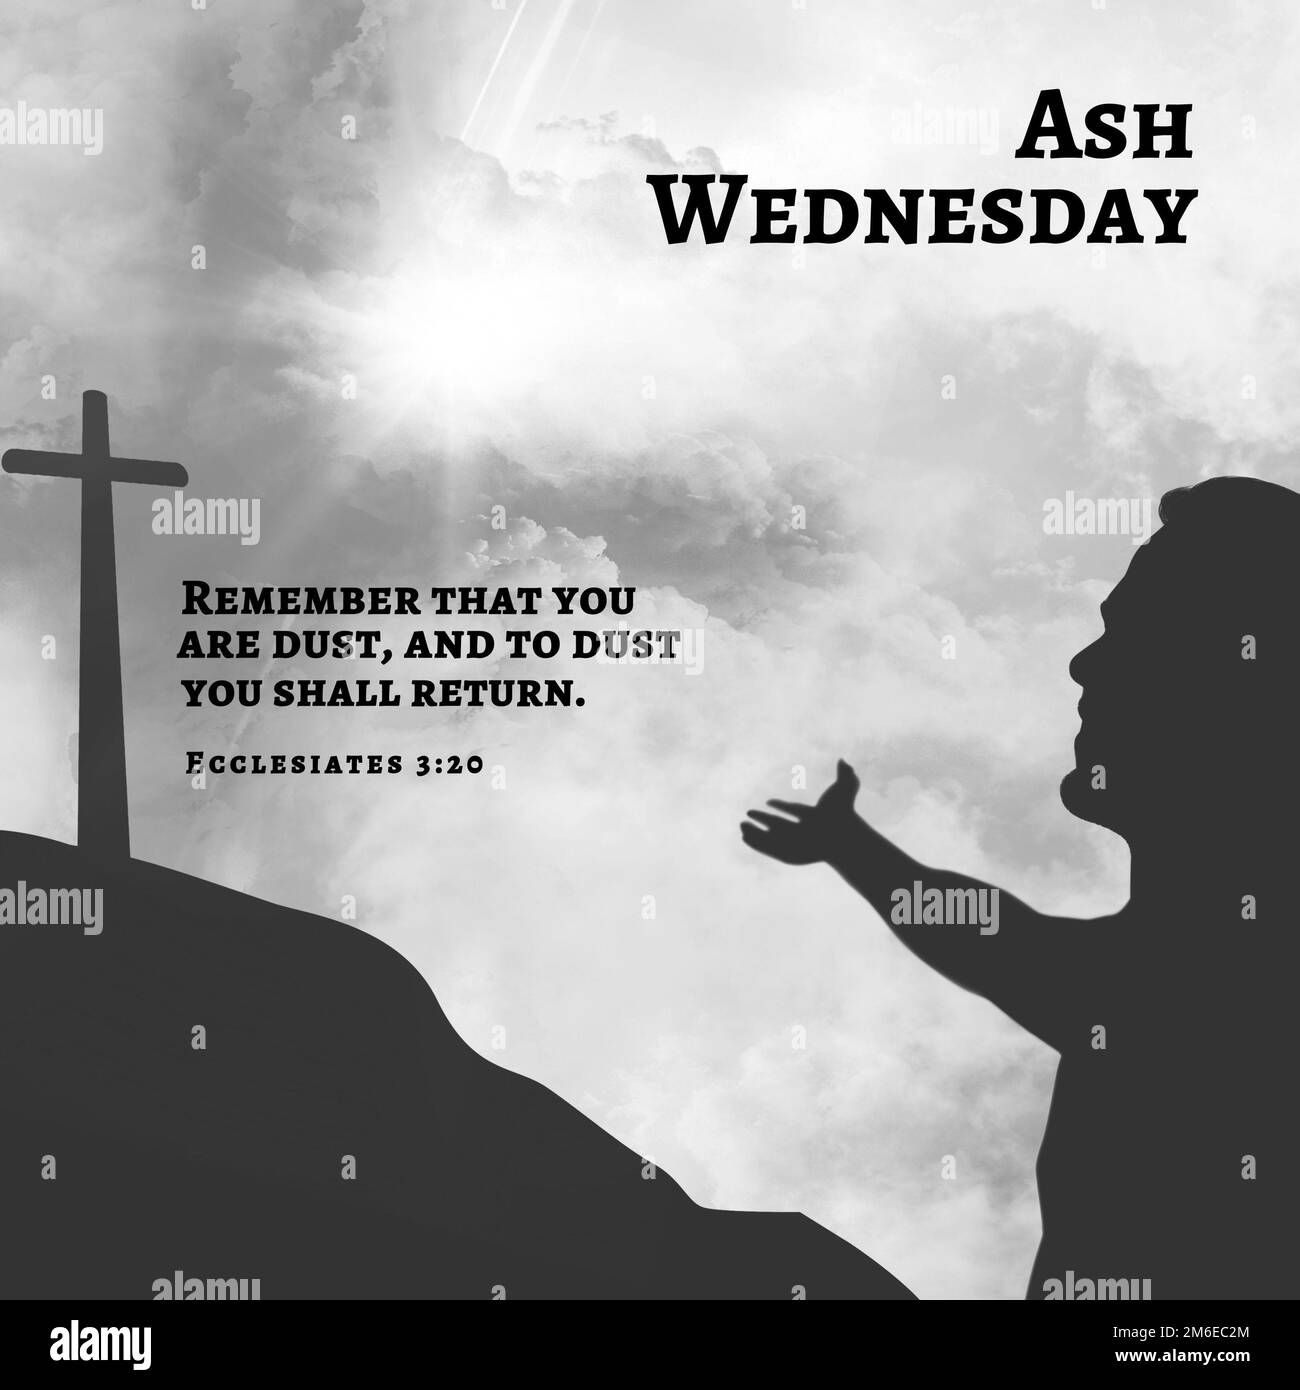 Ash wednesday, denk daran, dass du Staub bist, und zu Staub wirst du zurückkehren, Mann, der betet, überquert zu werden Stockfoto